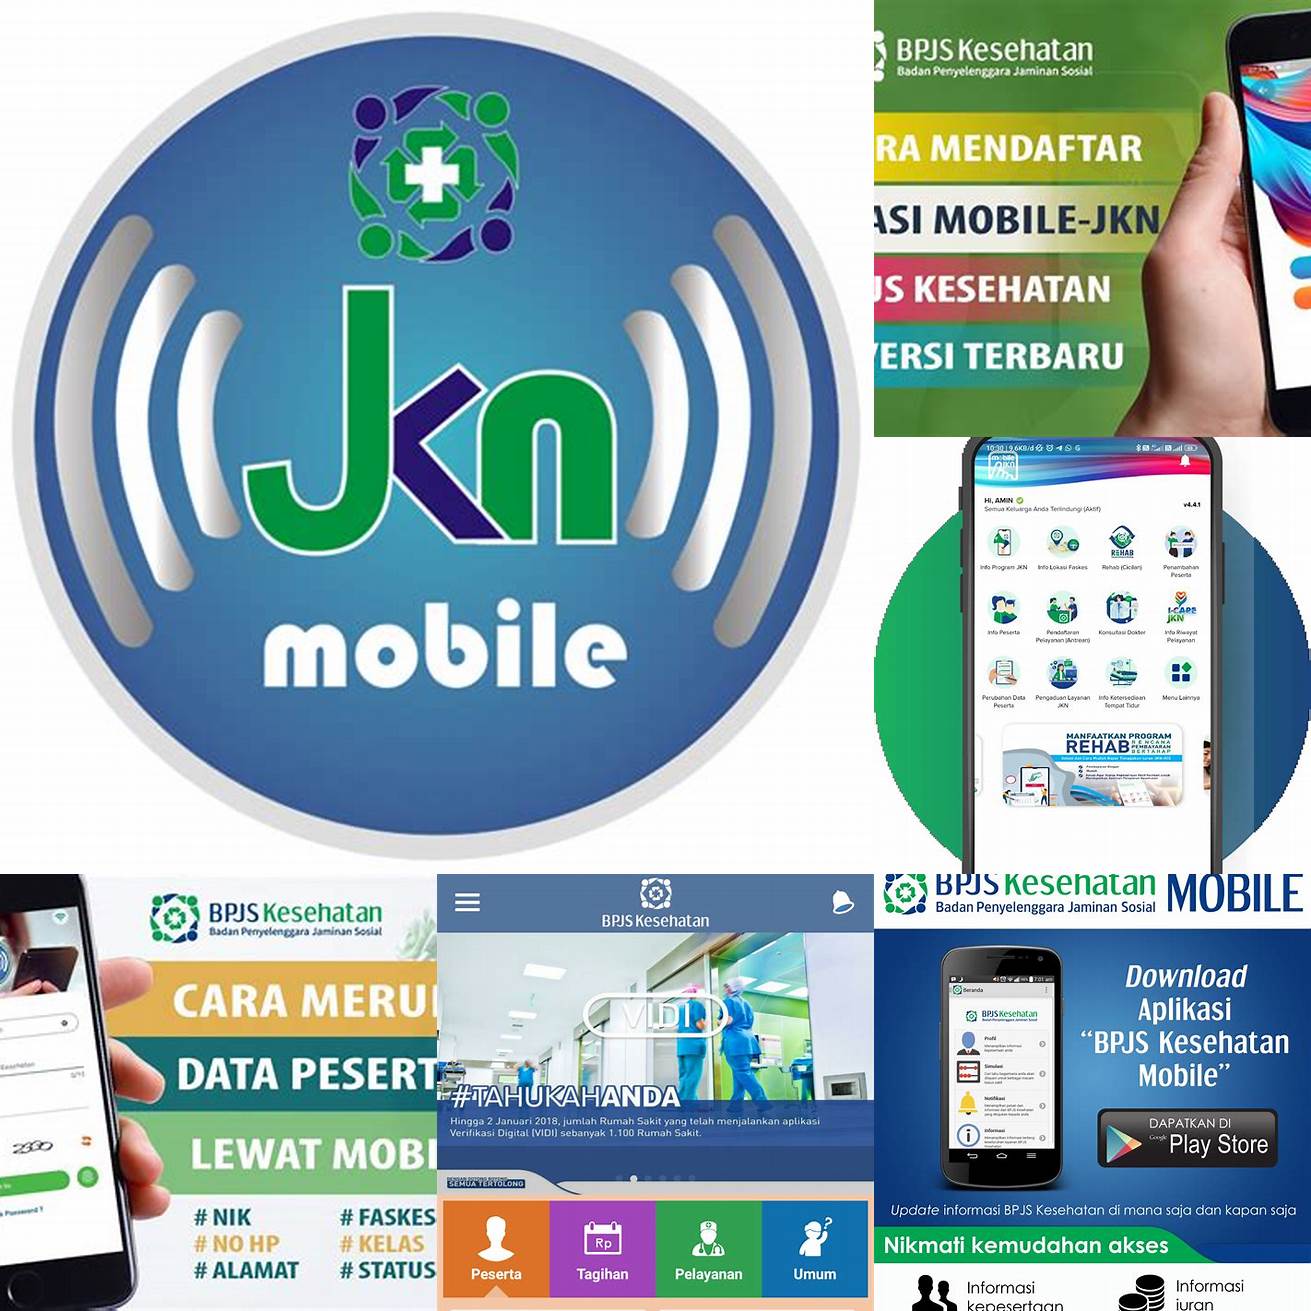 Unduh dan instal aplikasi Mobile JKN BPJS Kesehatan di App Store atau Google Play Store